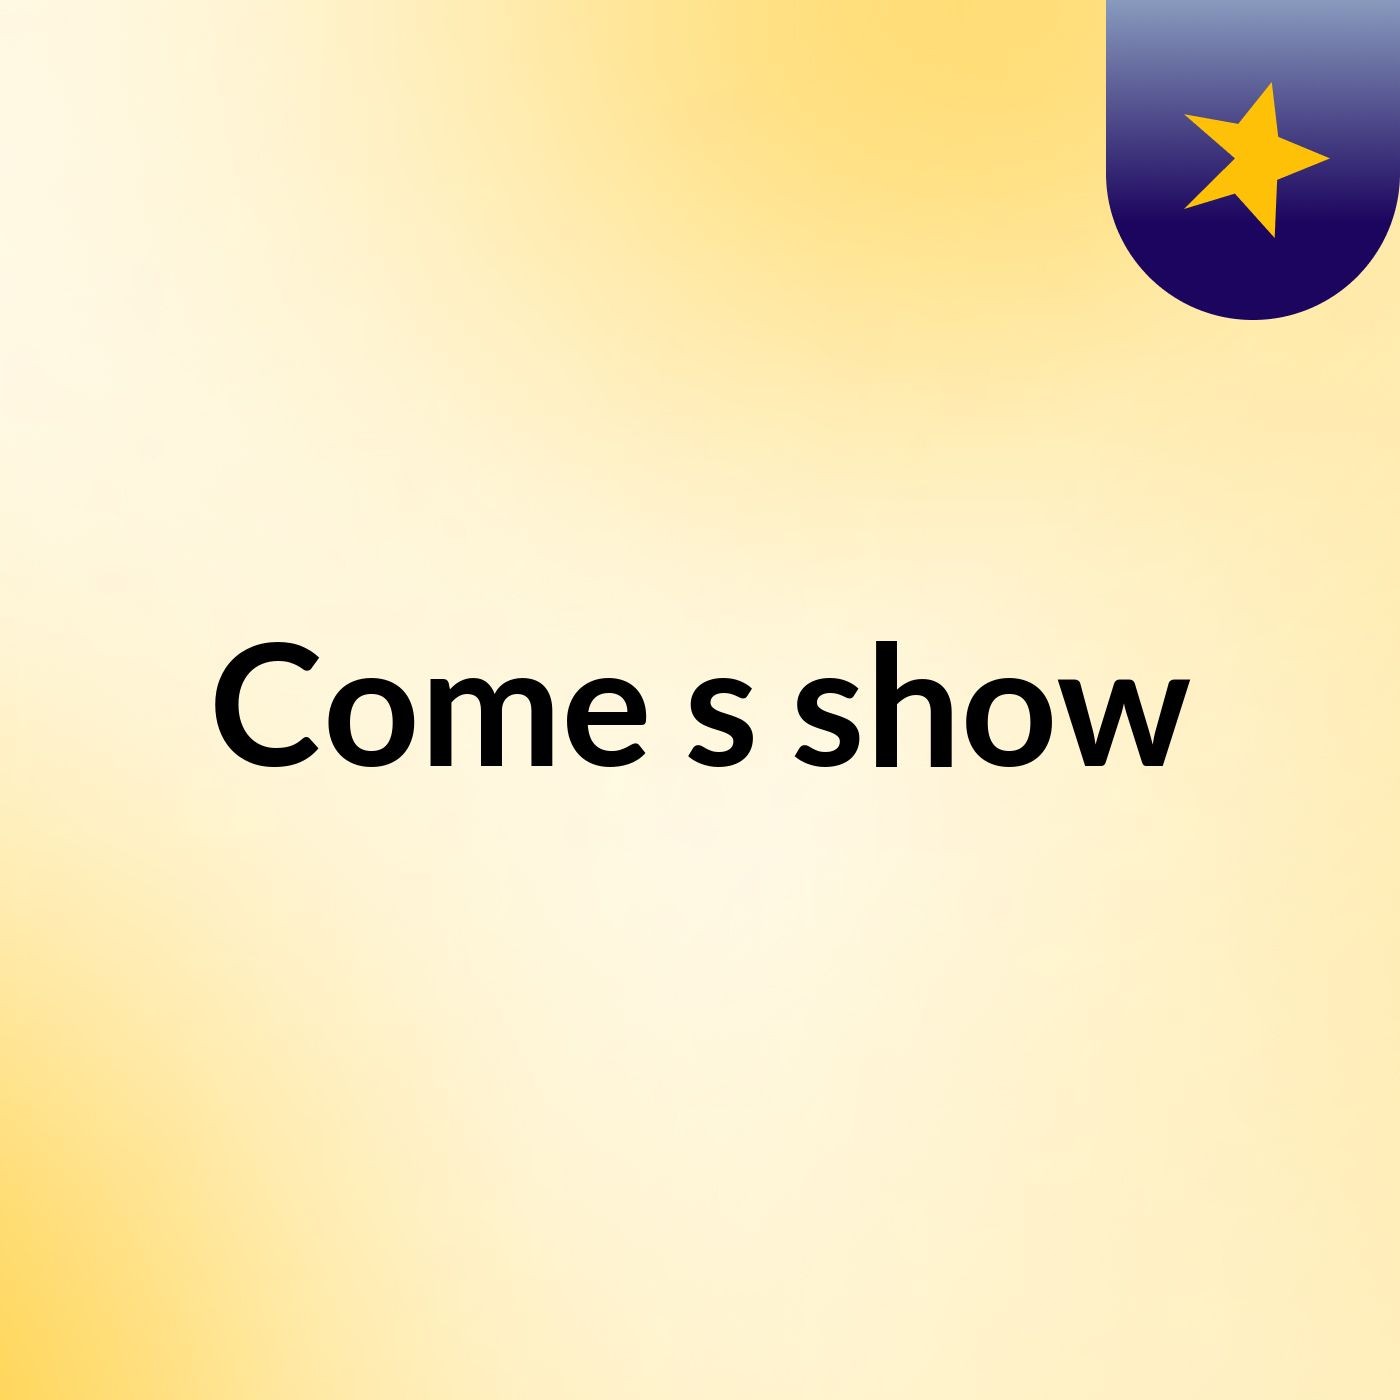 Come's show